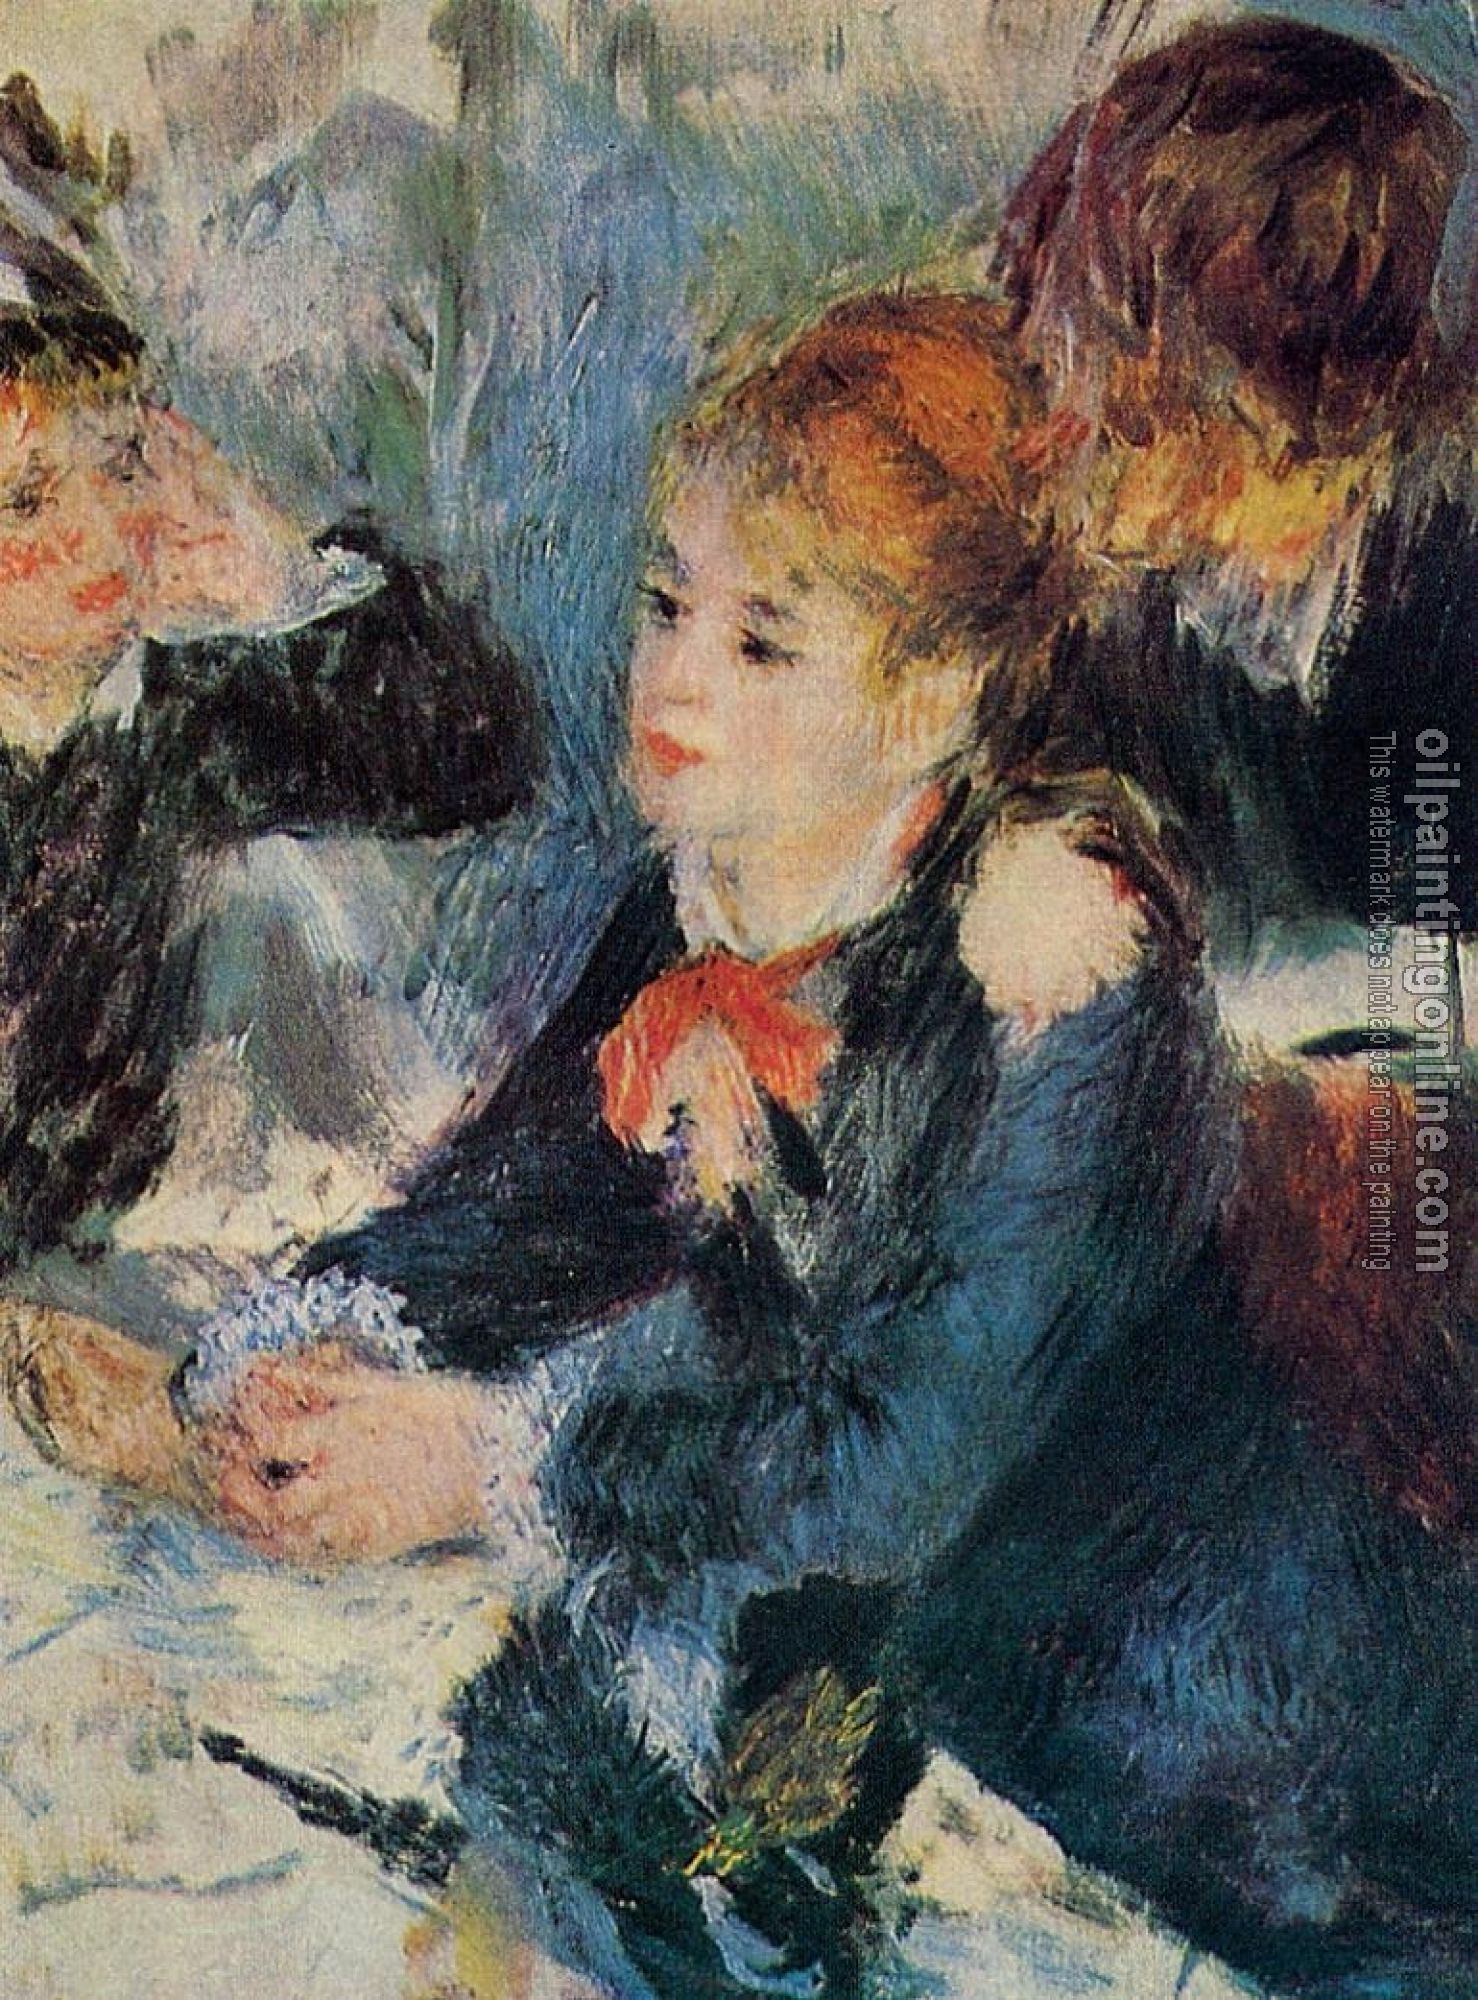 Renoir, Pierre Auguste - At the Milliner's